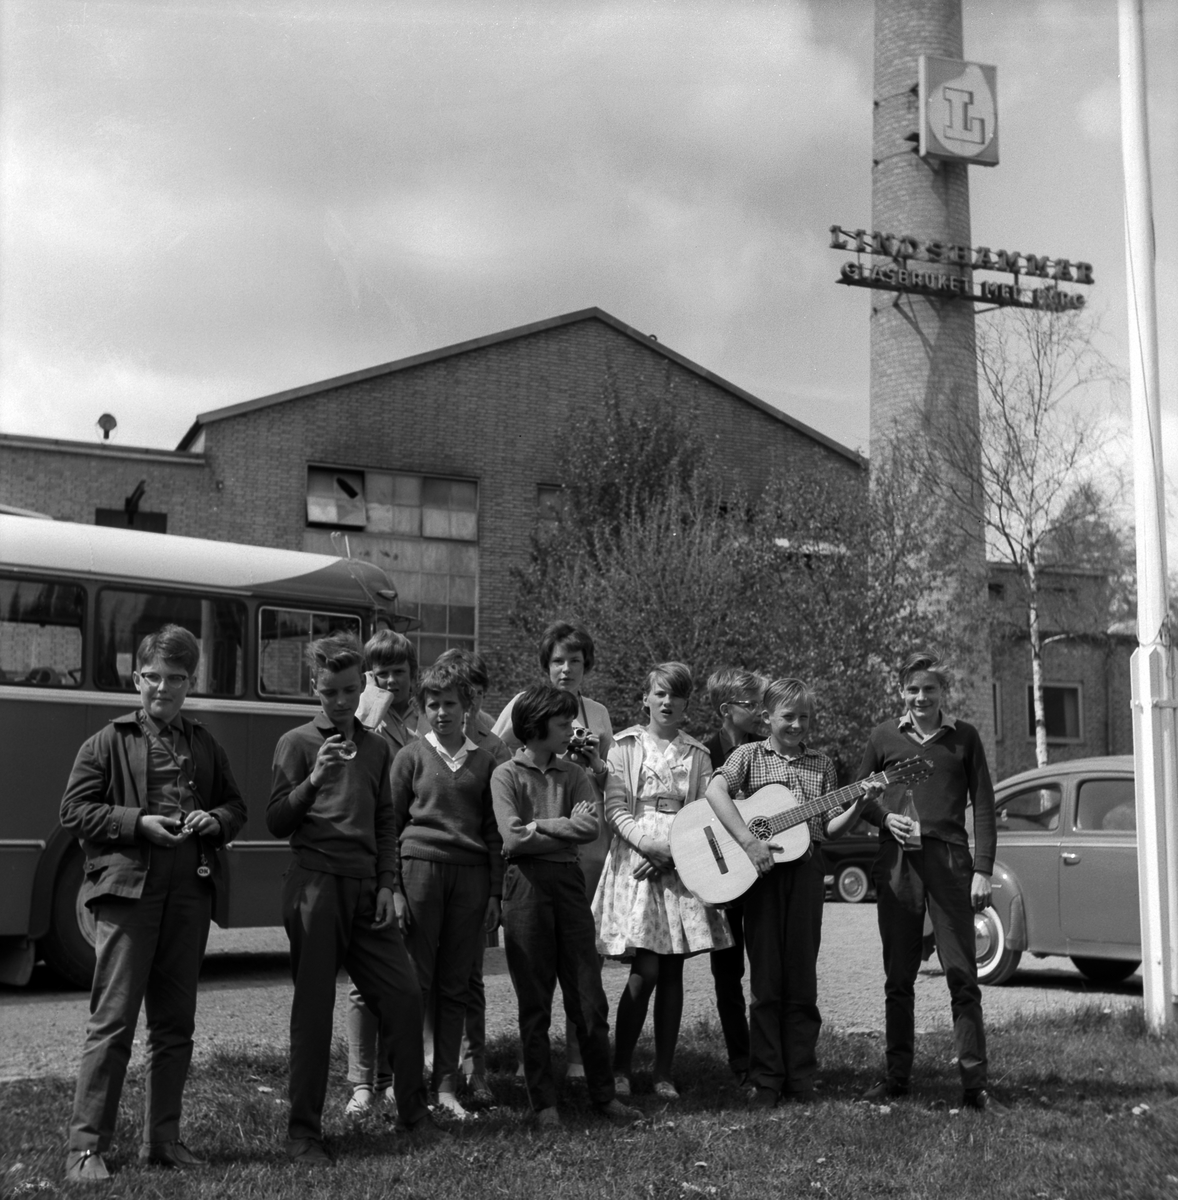 År 1961 på våren är klass 6 från Österängsskolan i Jönköping på skolresa i Småland tillsammans med sin lärare Göte Ohlsson. Här ett besök på Lindhammars glasbruk.
På Österängsskolan var det tradition att man i 4:an åkte till Vadstena och Omberg, i 5:an till Västergötland (Falbygden, Skara, Varnhem) och i 6:an en resa till glasbruk i Småland.